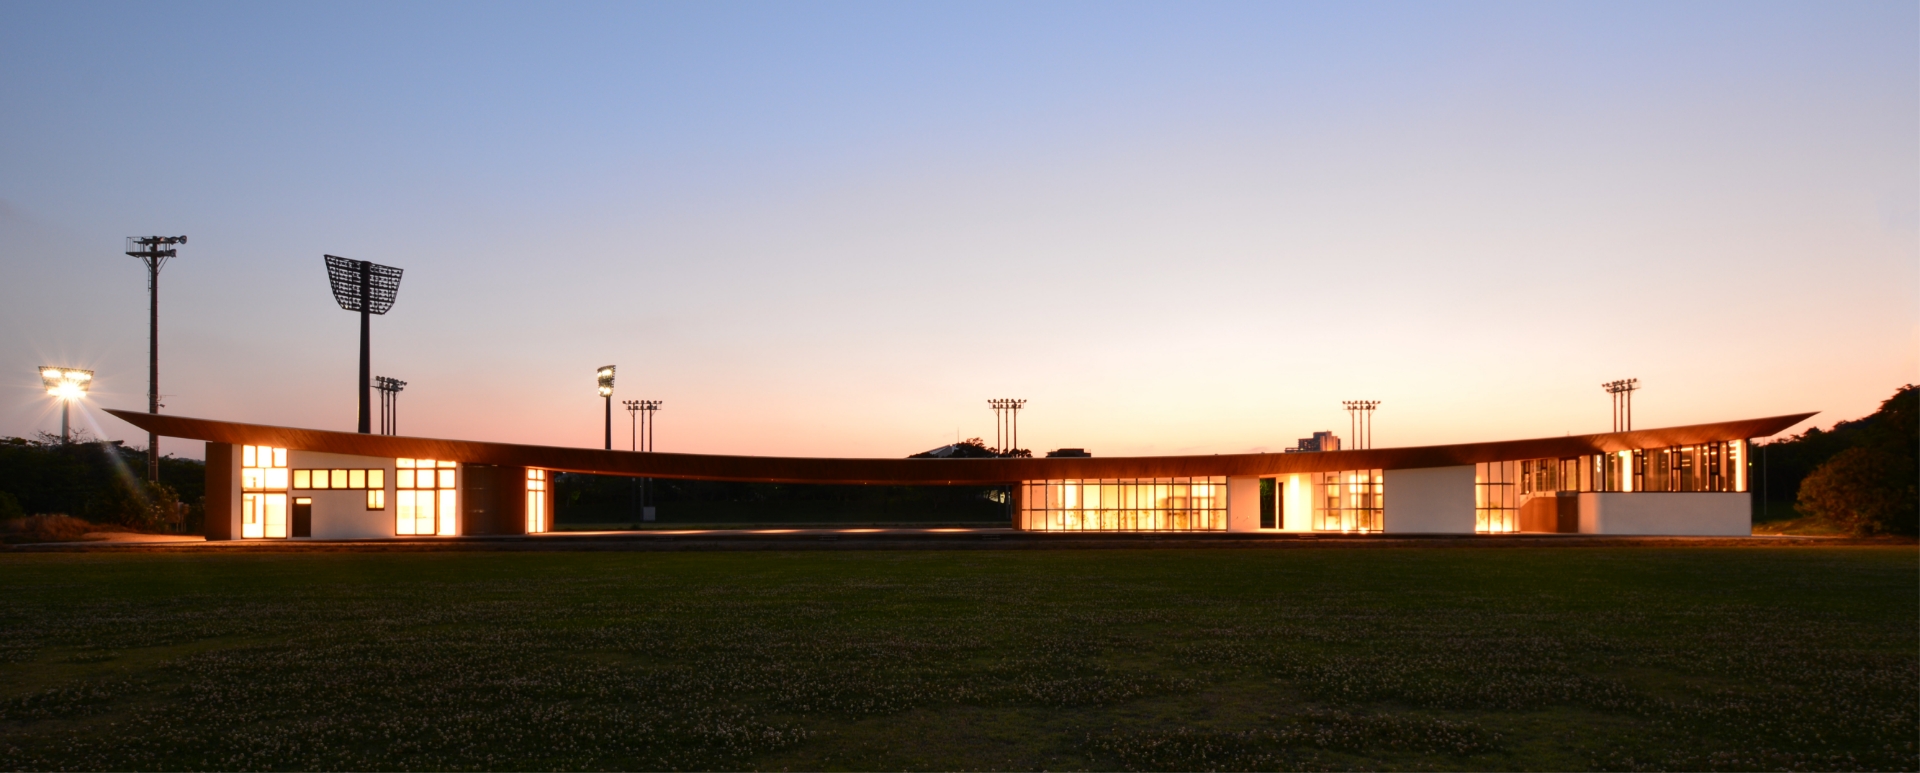 建築設計事例 沖縄県総合運動公園 サッカー・ラグビー場 蹴球場 クラブハウス 外観 夜